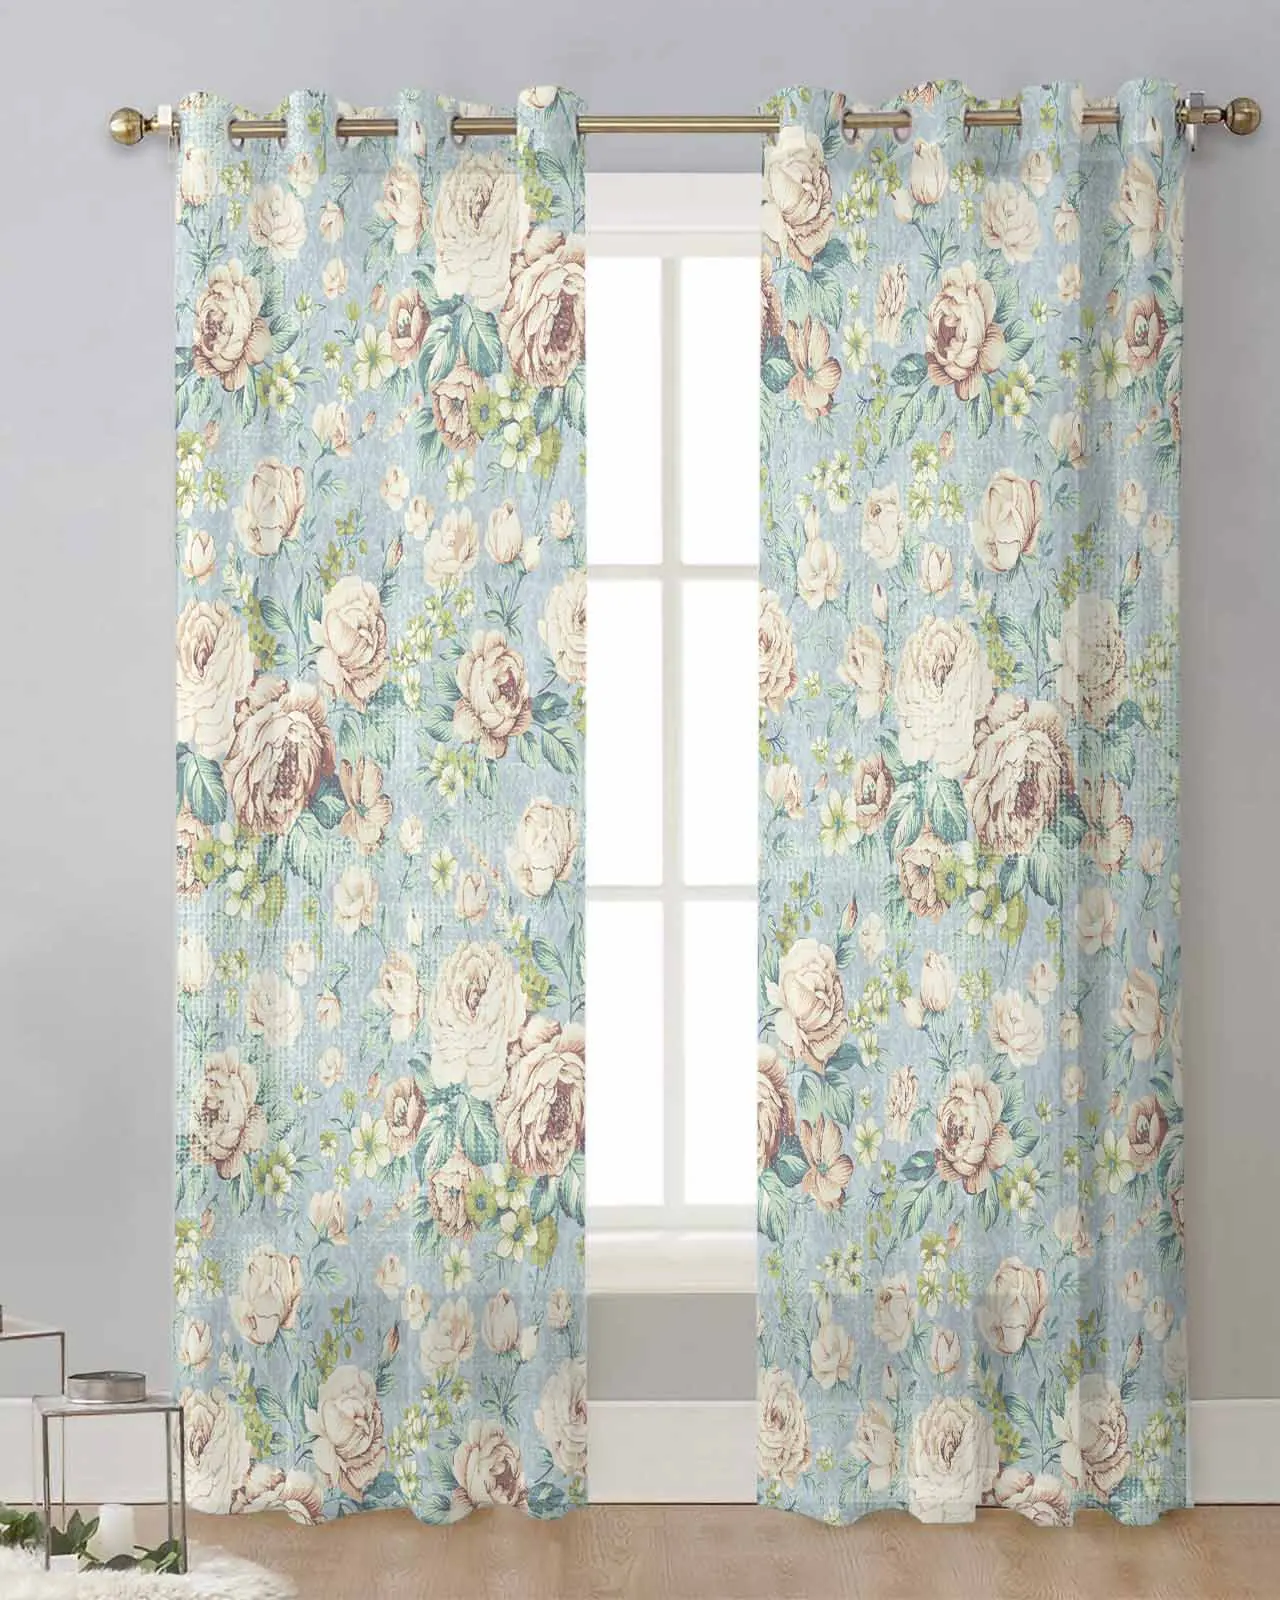 

Тюлевые шторы с иллюстрациями цветов, занавески из вуали в стиле ретро для спальни, гостиной, драпировки для окон